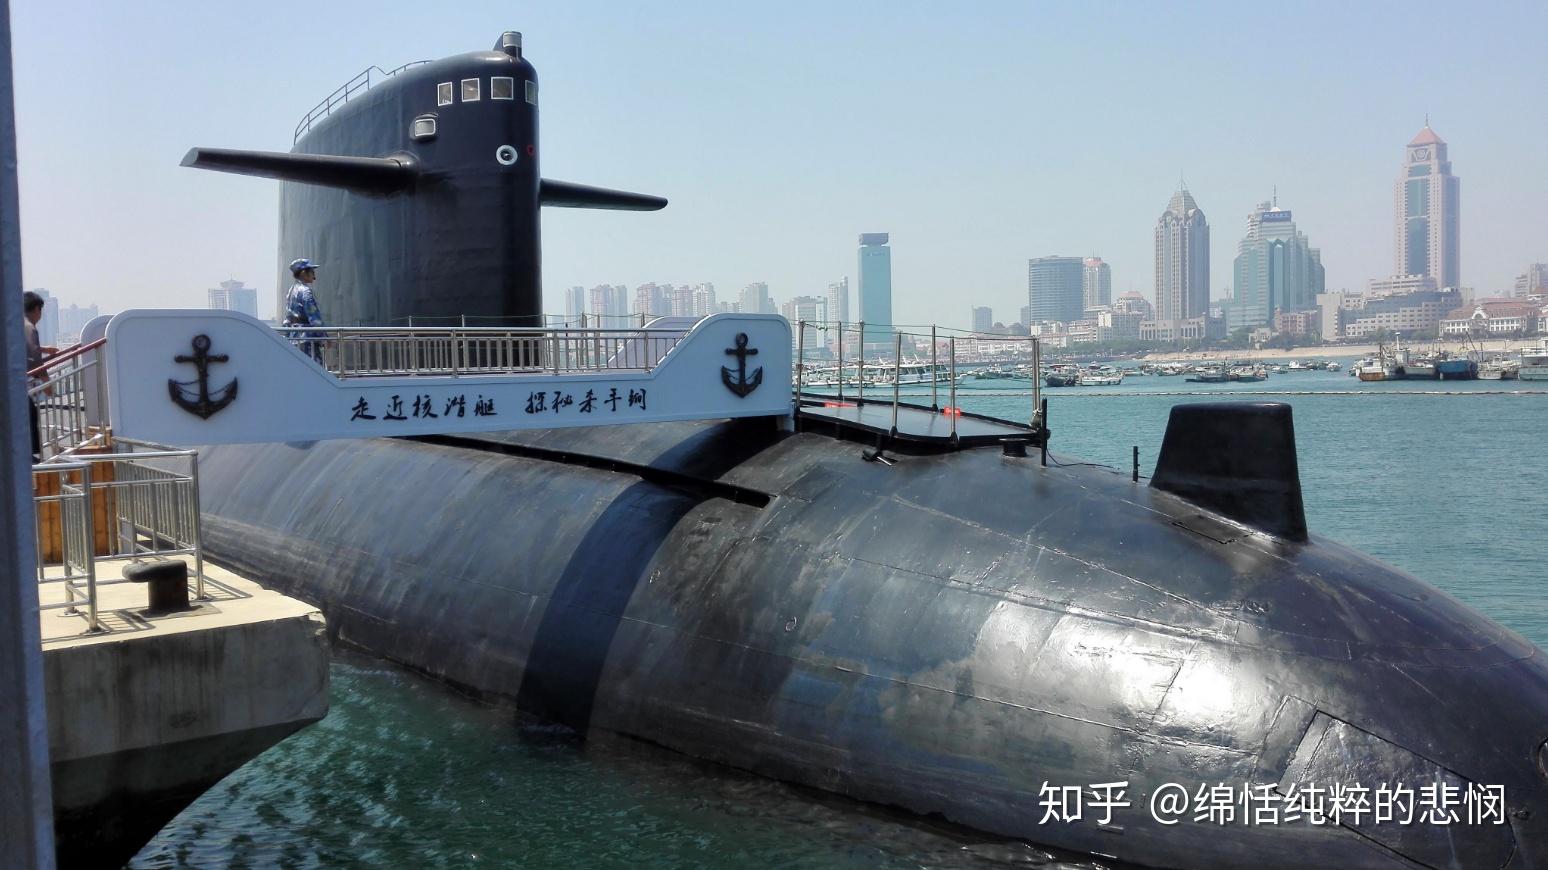 请问孩子参观青岛海军博物馆的退役401核潜艇会受到辐射吗? 